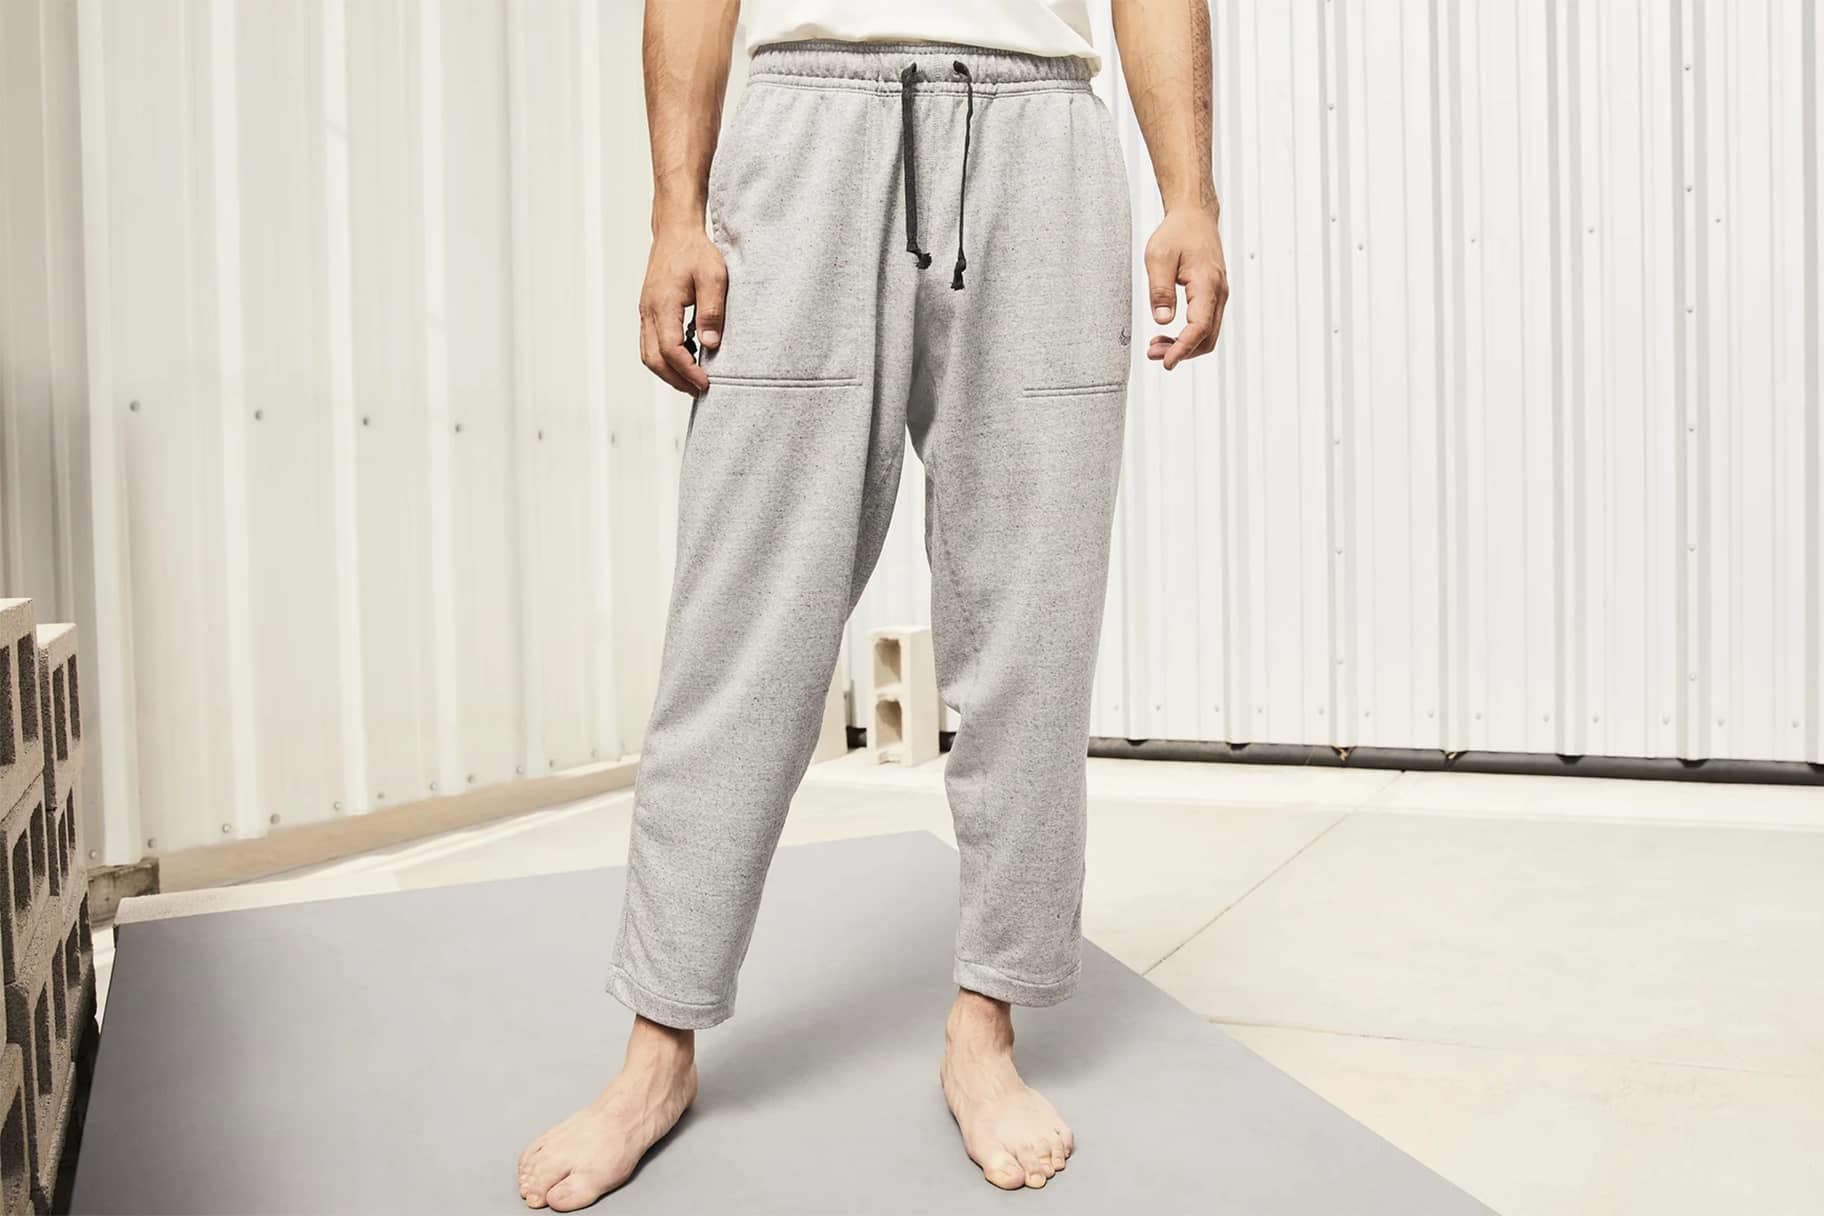 Mirar fijamente judío Trastornado Cinco estilos de pants Nike para hombre cómodos para dormir. Nike